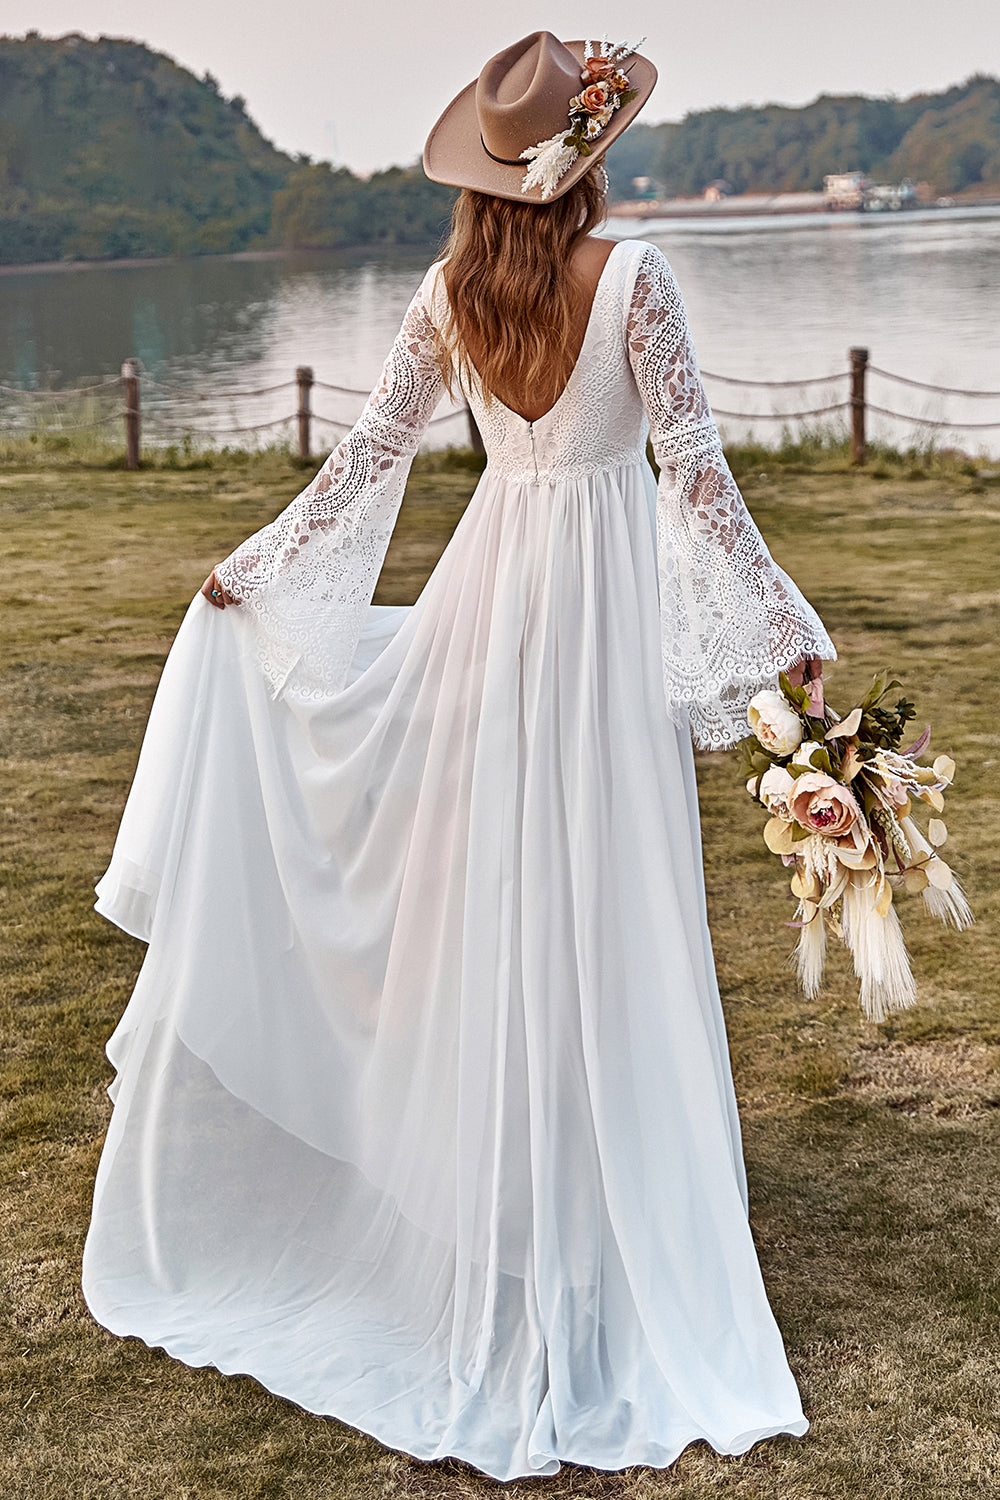 15 V Neck Wedding Dresses For Boho Brides